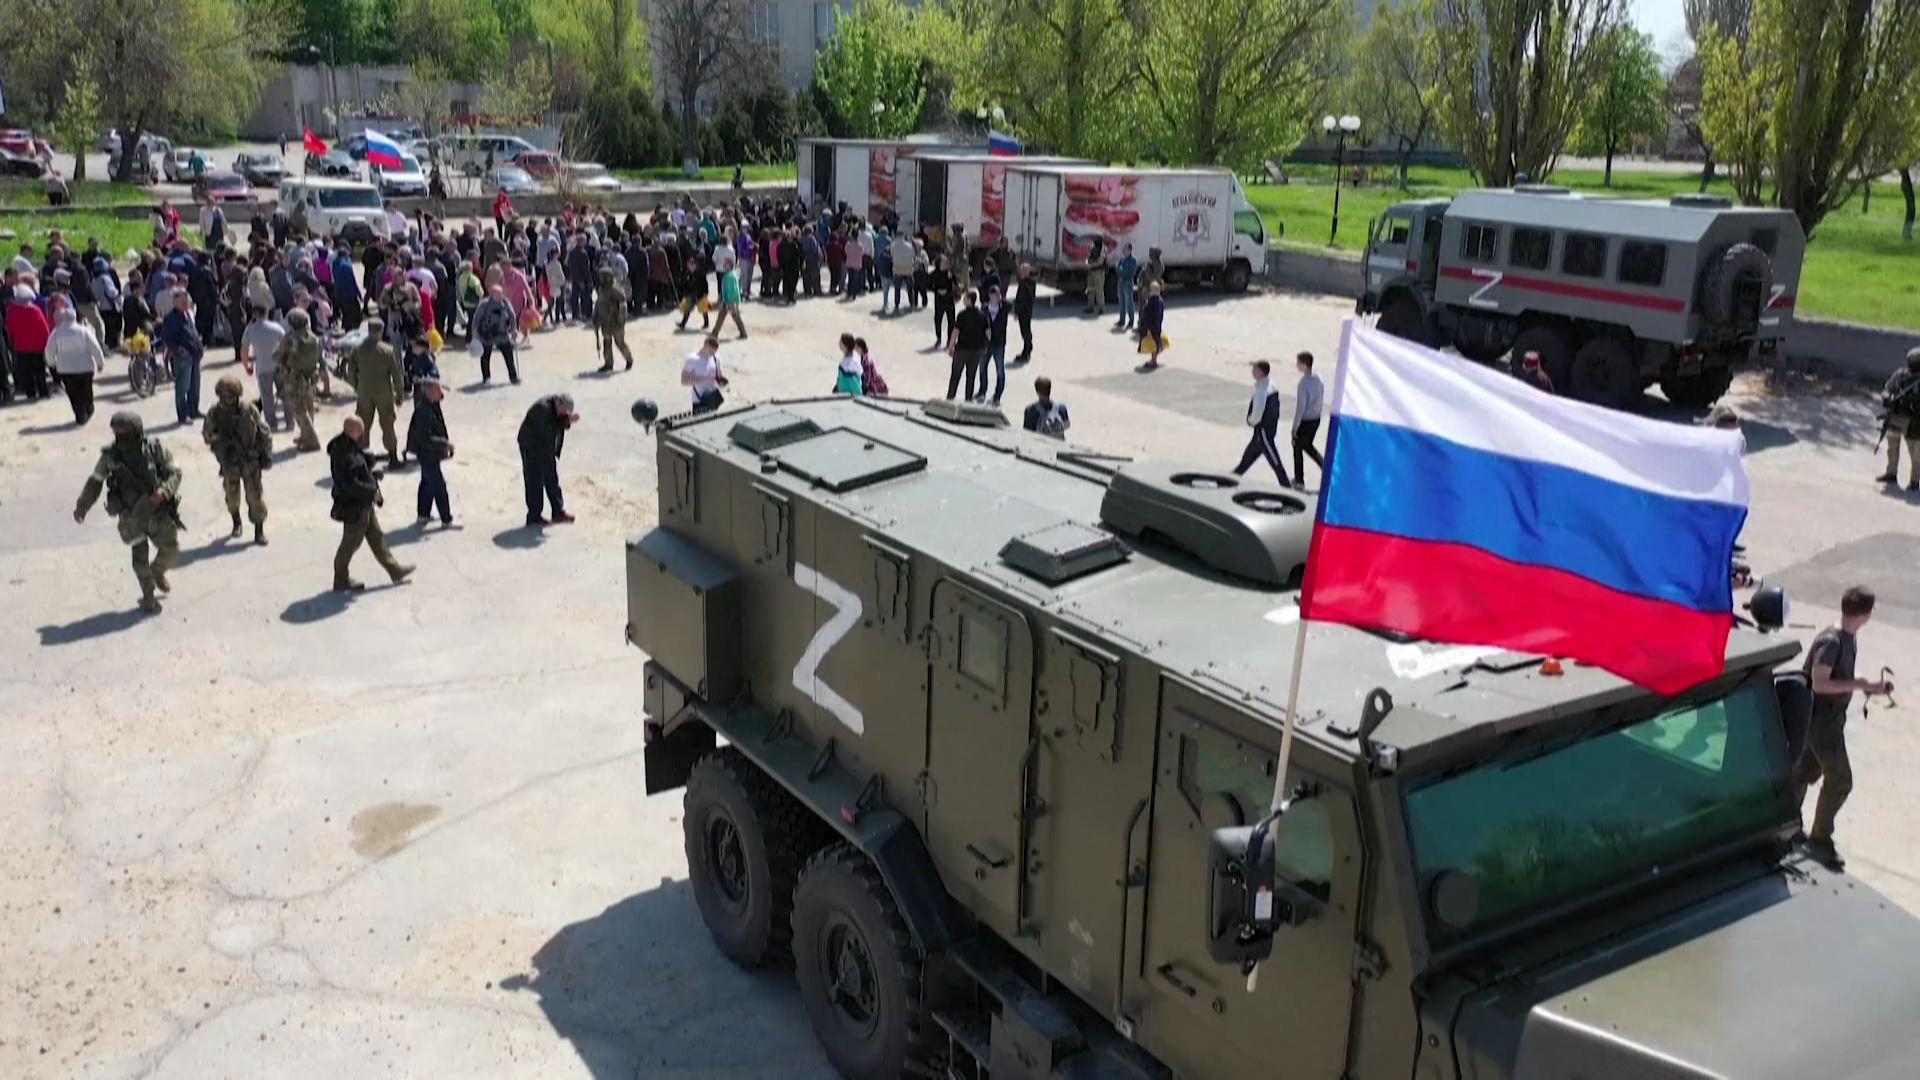 Les habitants de Berdiansk font la file pour recevoir l'aide humanitaire distribuée par les camions militaires russes.